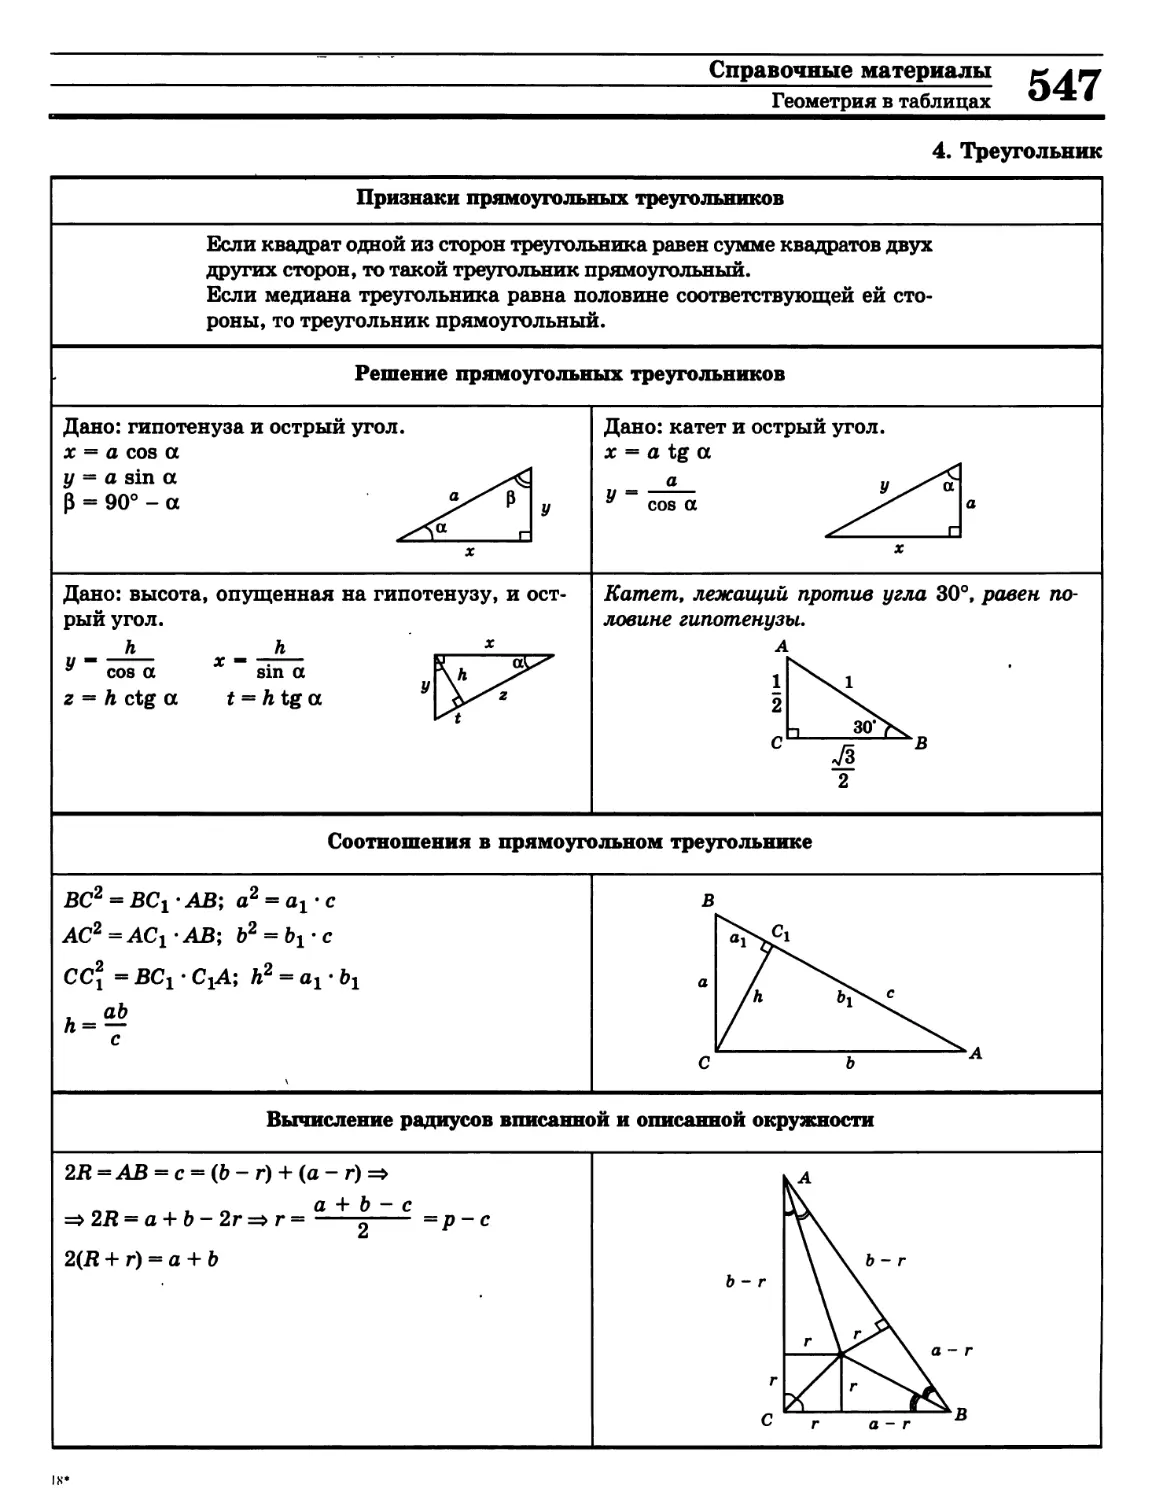 >>>
>>>
- прямоугольного треугольника
Решение прямоугольных треугольников